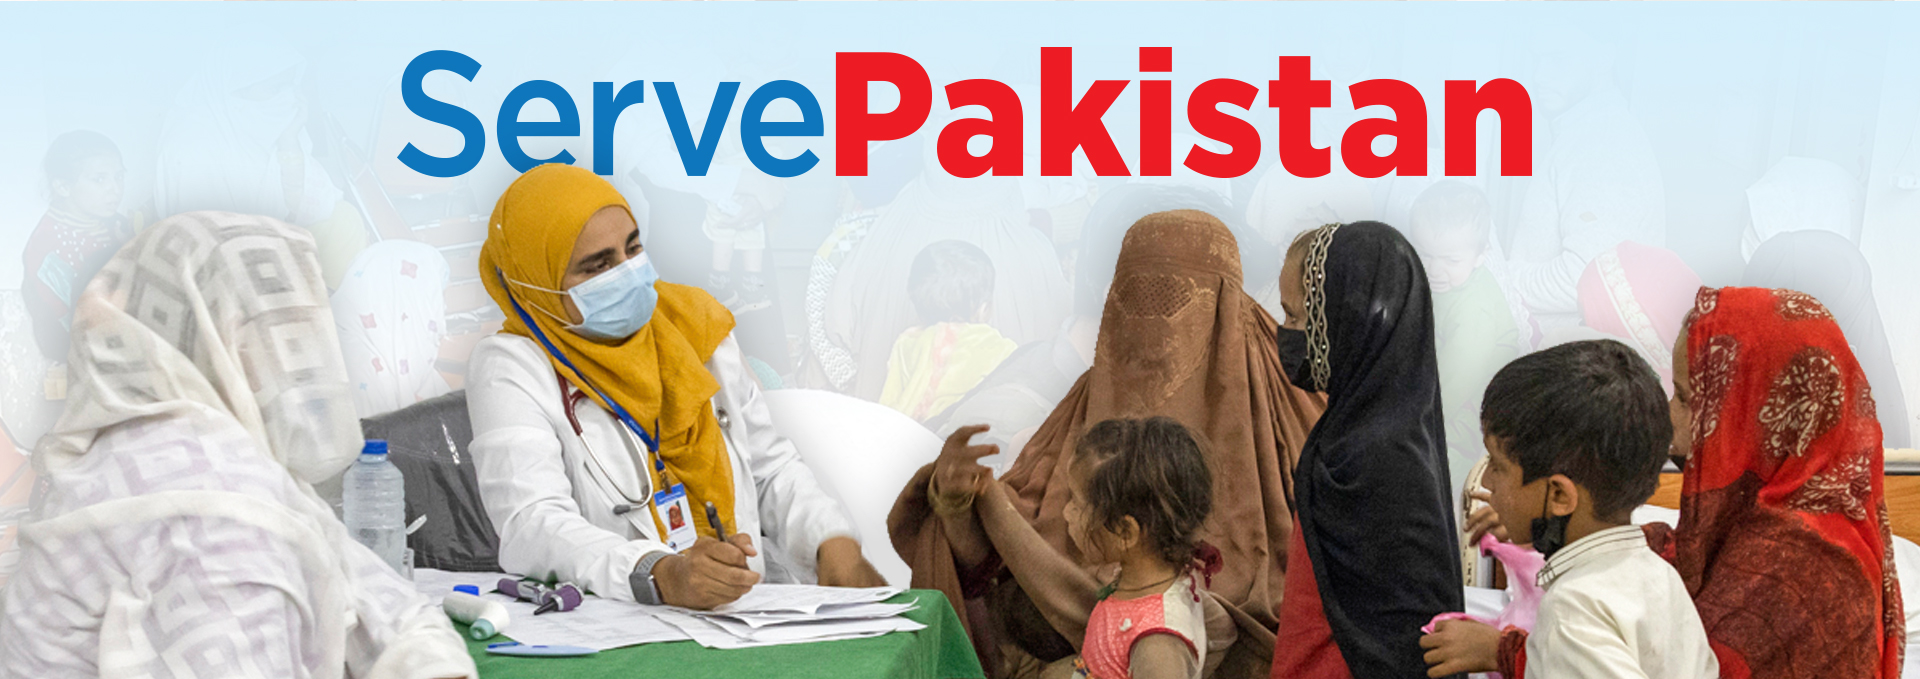 SavePakistan Volunteer Banner